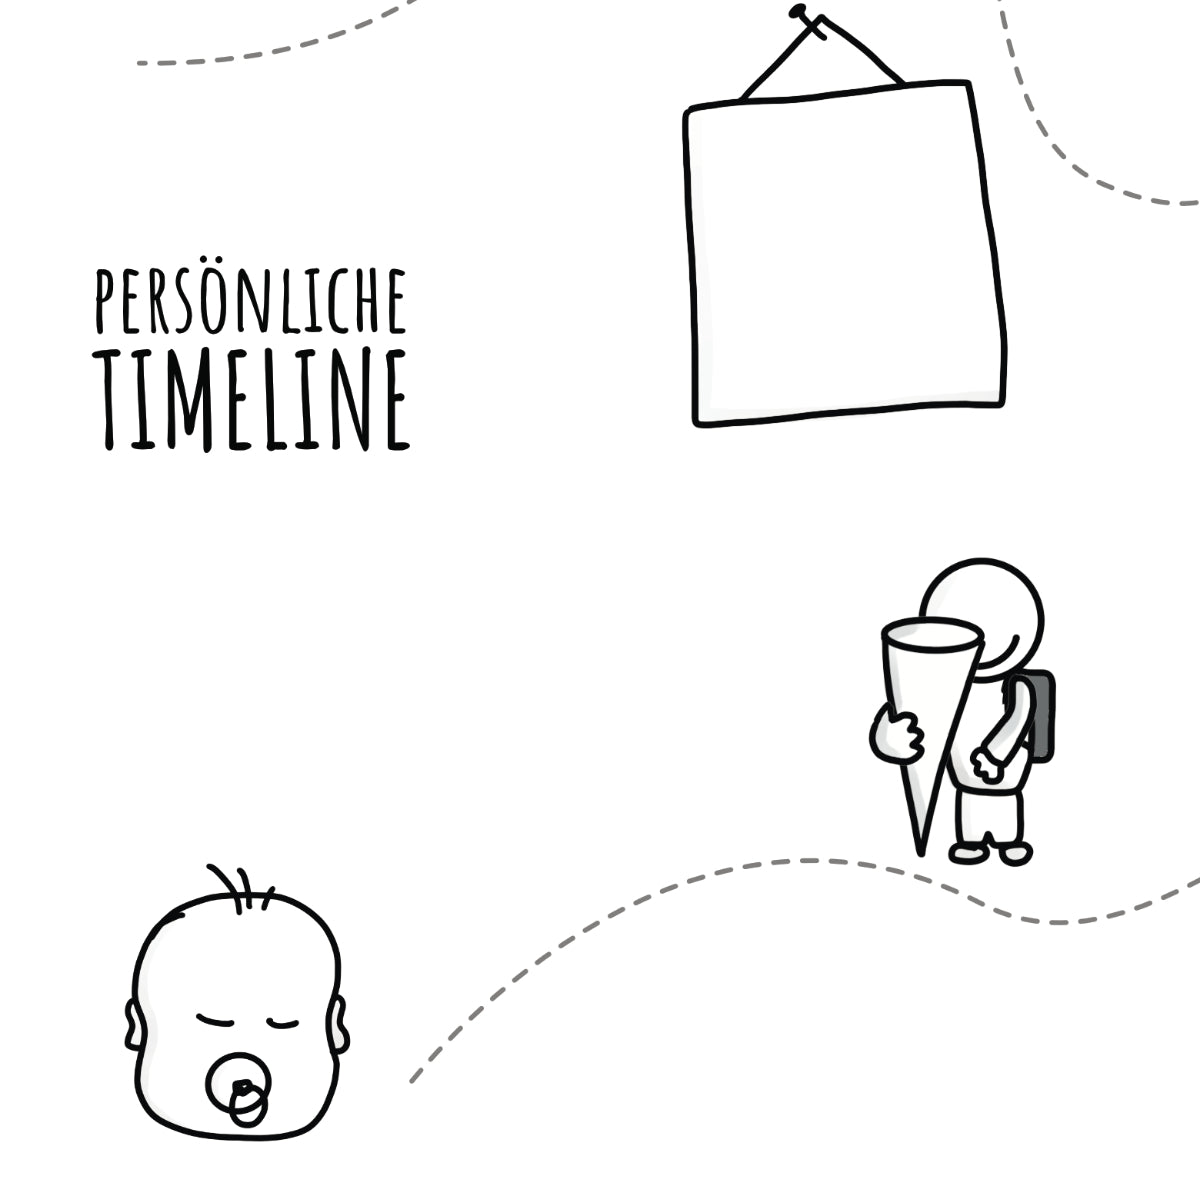 Persönliche Timeline für ressourcenorientiertes Coaching